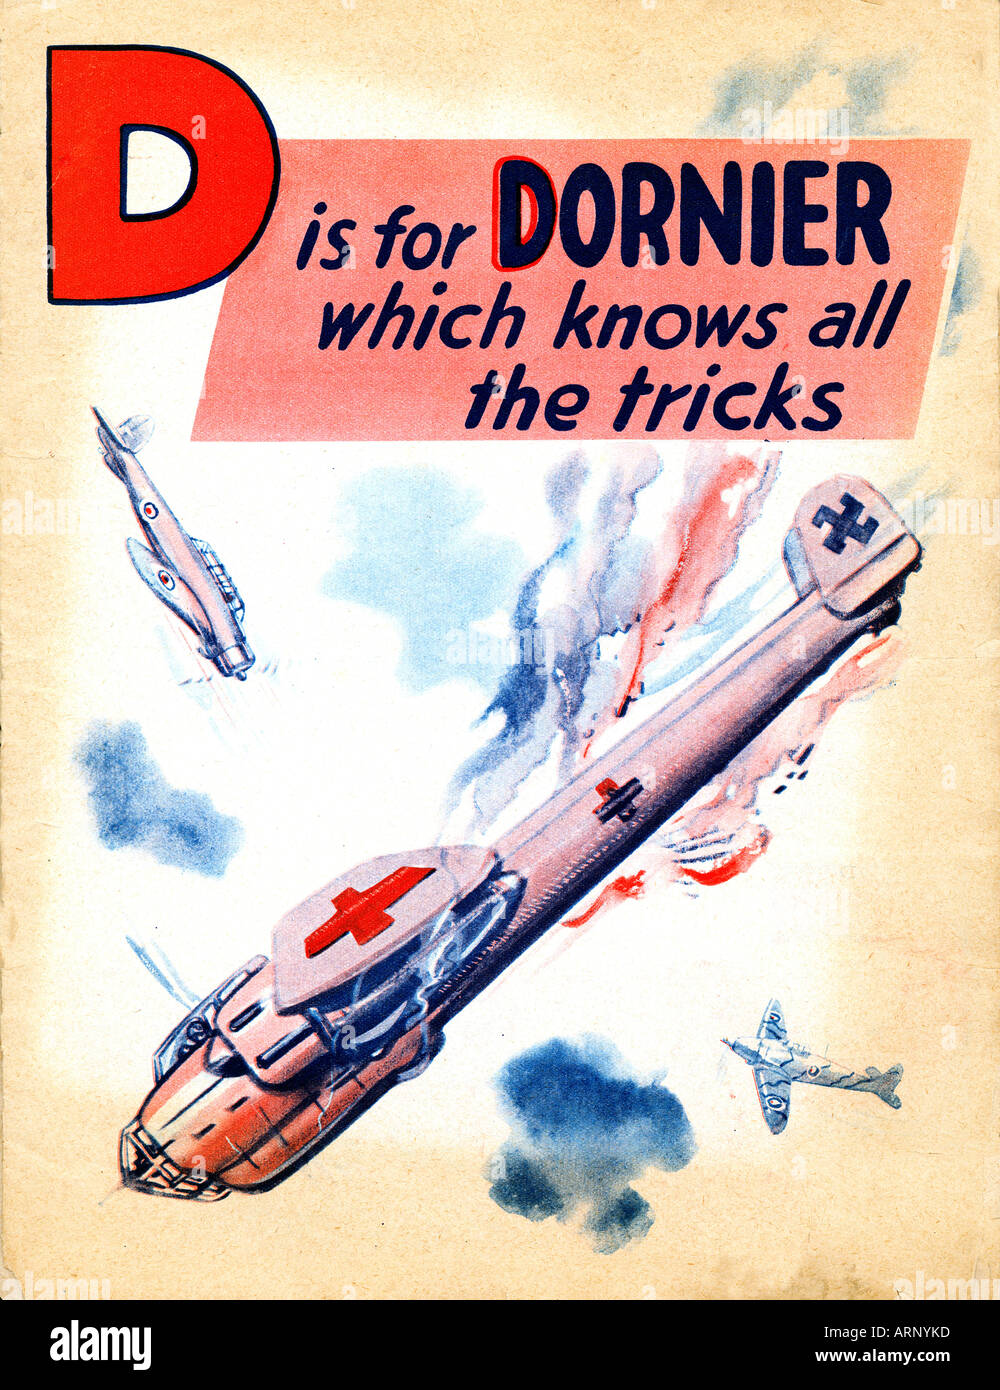 Bataille d'Angleterre est d'alphabet pour enfants britannique Dornier pour à partir de la SECONDE GUERRE MONDIALE illustre les bombardiers allemands Banque D'Images